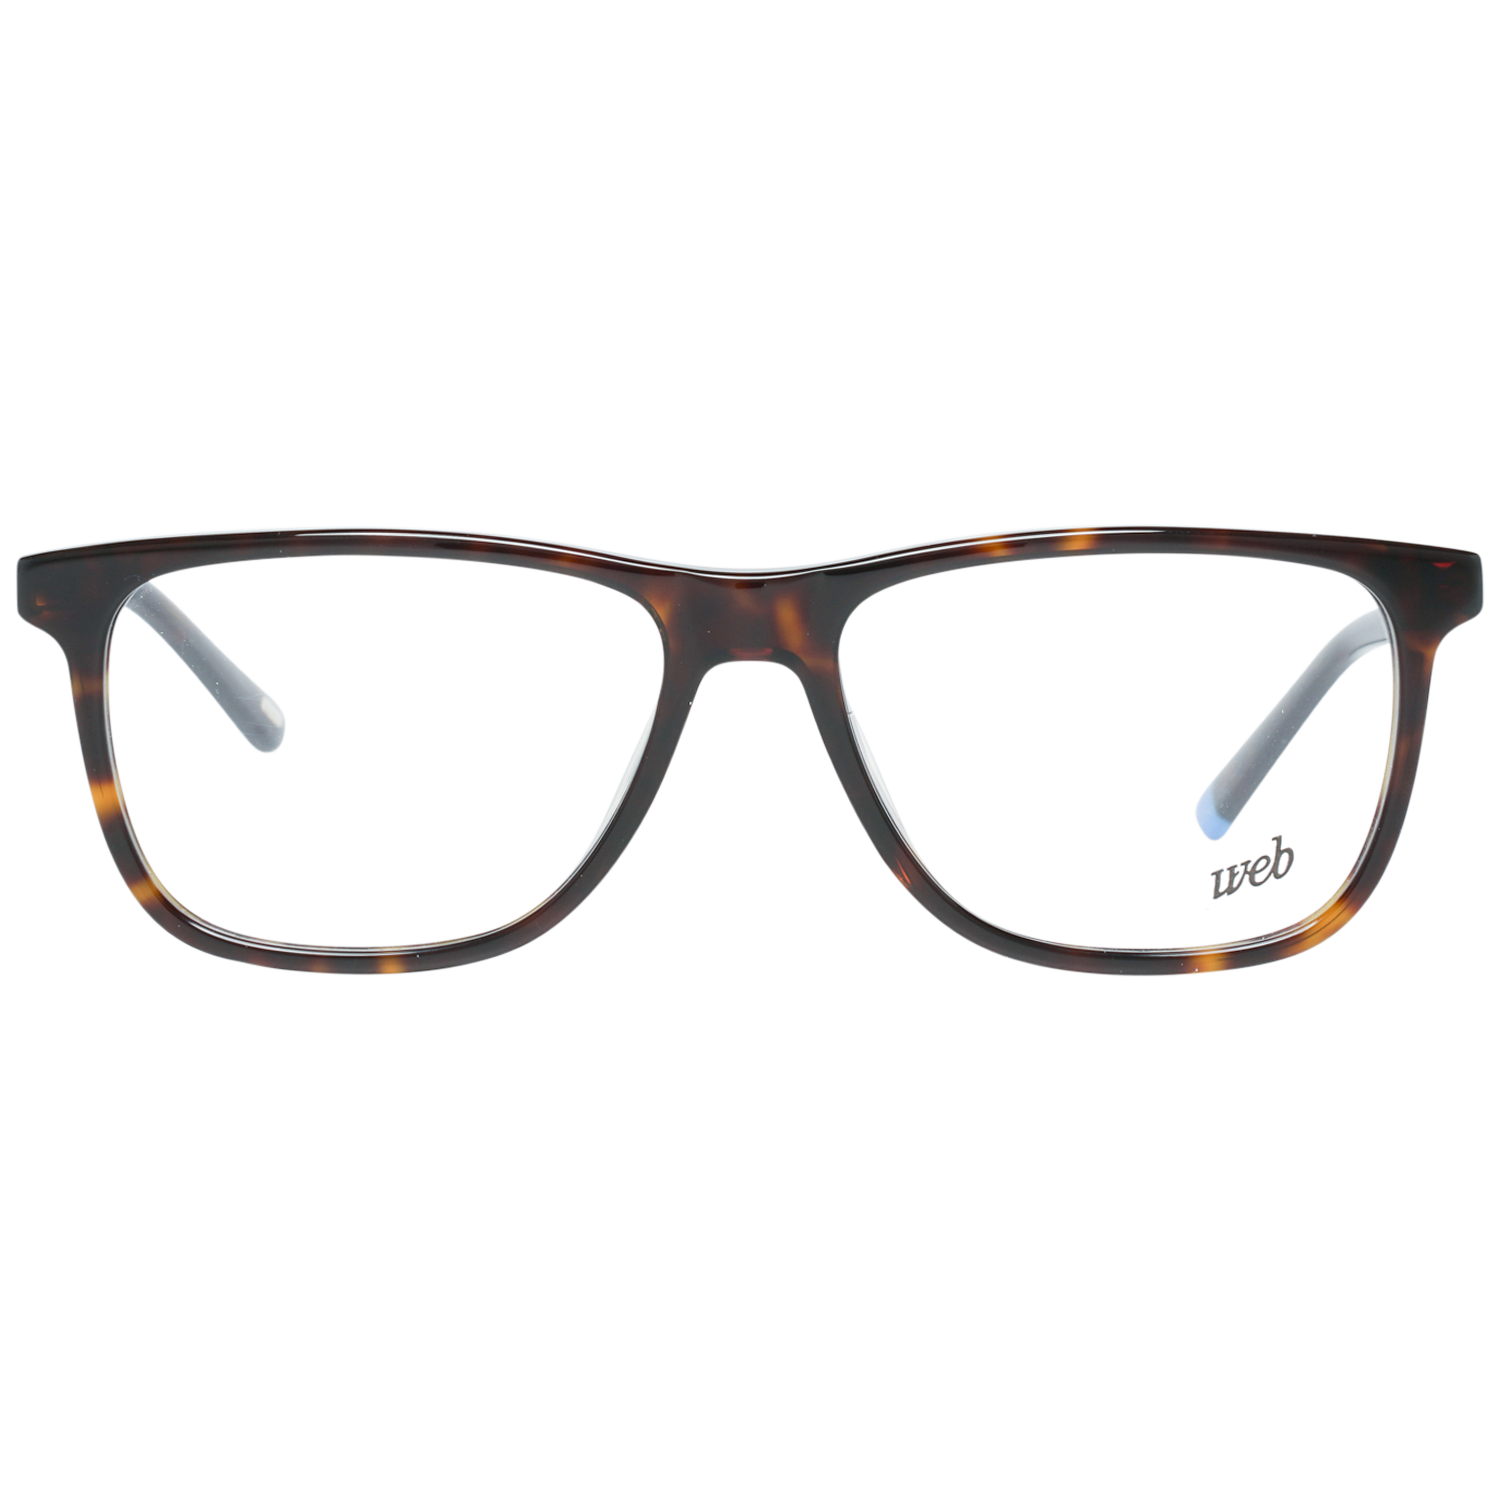 Web Frames Web Glasses Optical Frame WE5224 052 54 Eyeglasses Eyewear UK USA Australia 